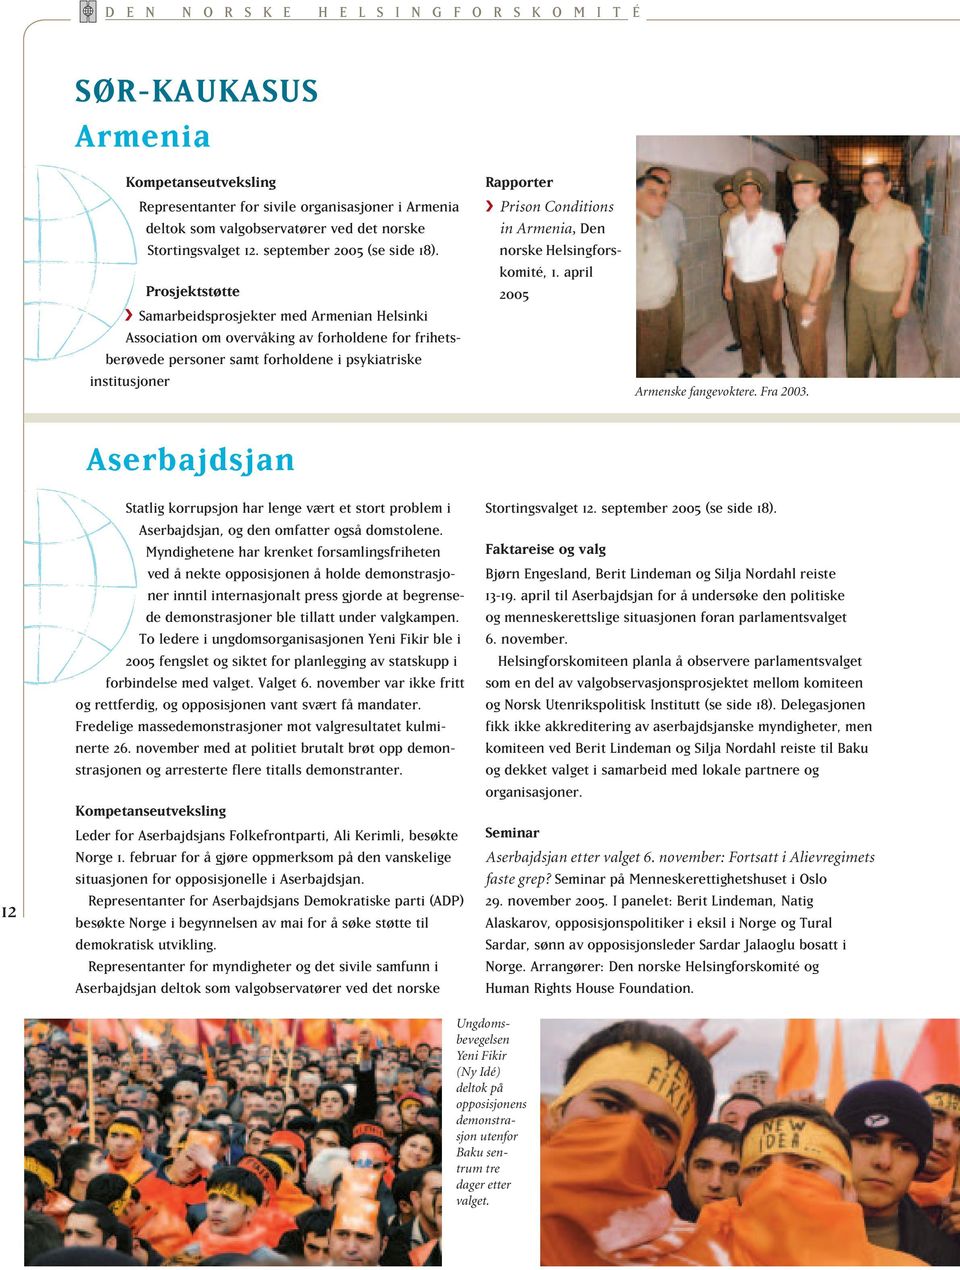 Samarbeidsprosjekter med Armenian Helsinki Association om overvåking av forholdene for frihetsberøvede personer samt forholdene i psykiatriske institusjoner Rapporter Prison Conditions in Armenia,